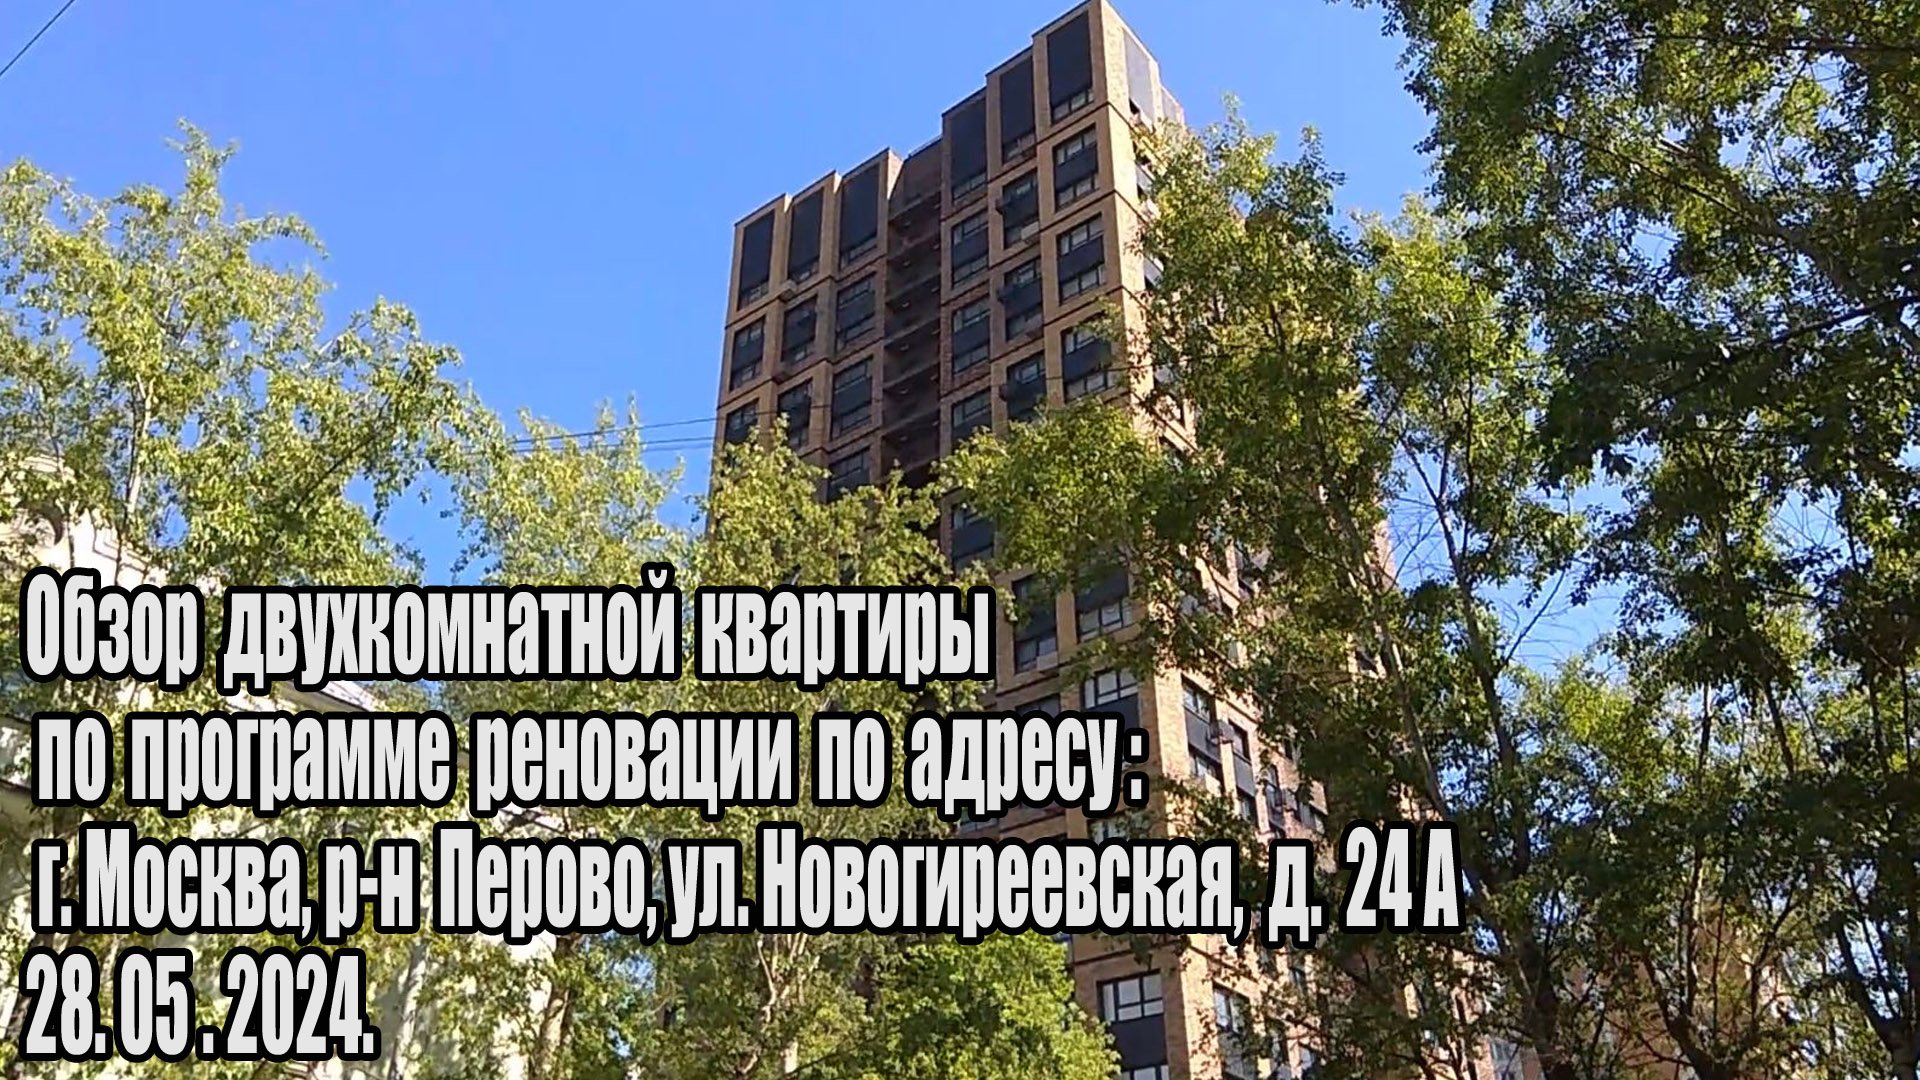 Обзор 2х комнатной квартиры ул. Новогиреевская, д. 24 а (28.05.2024)